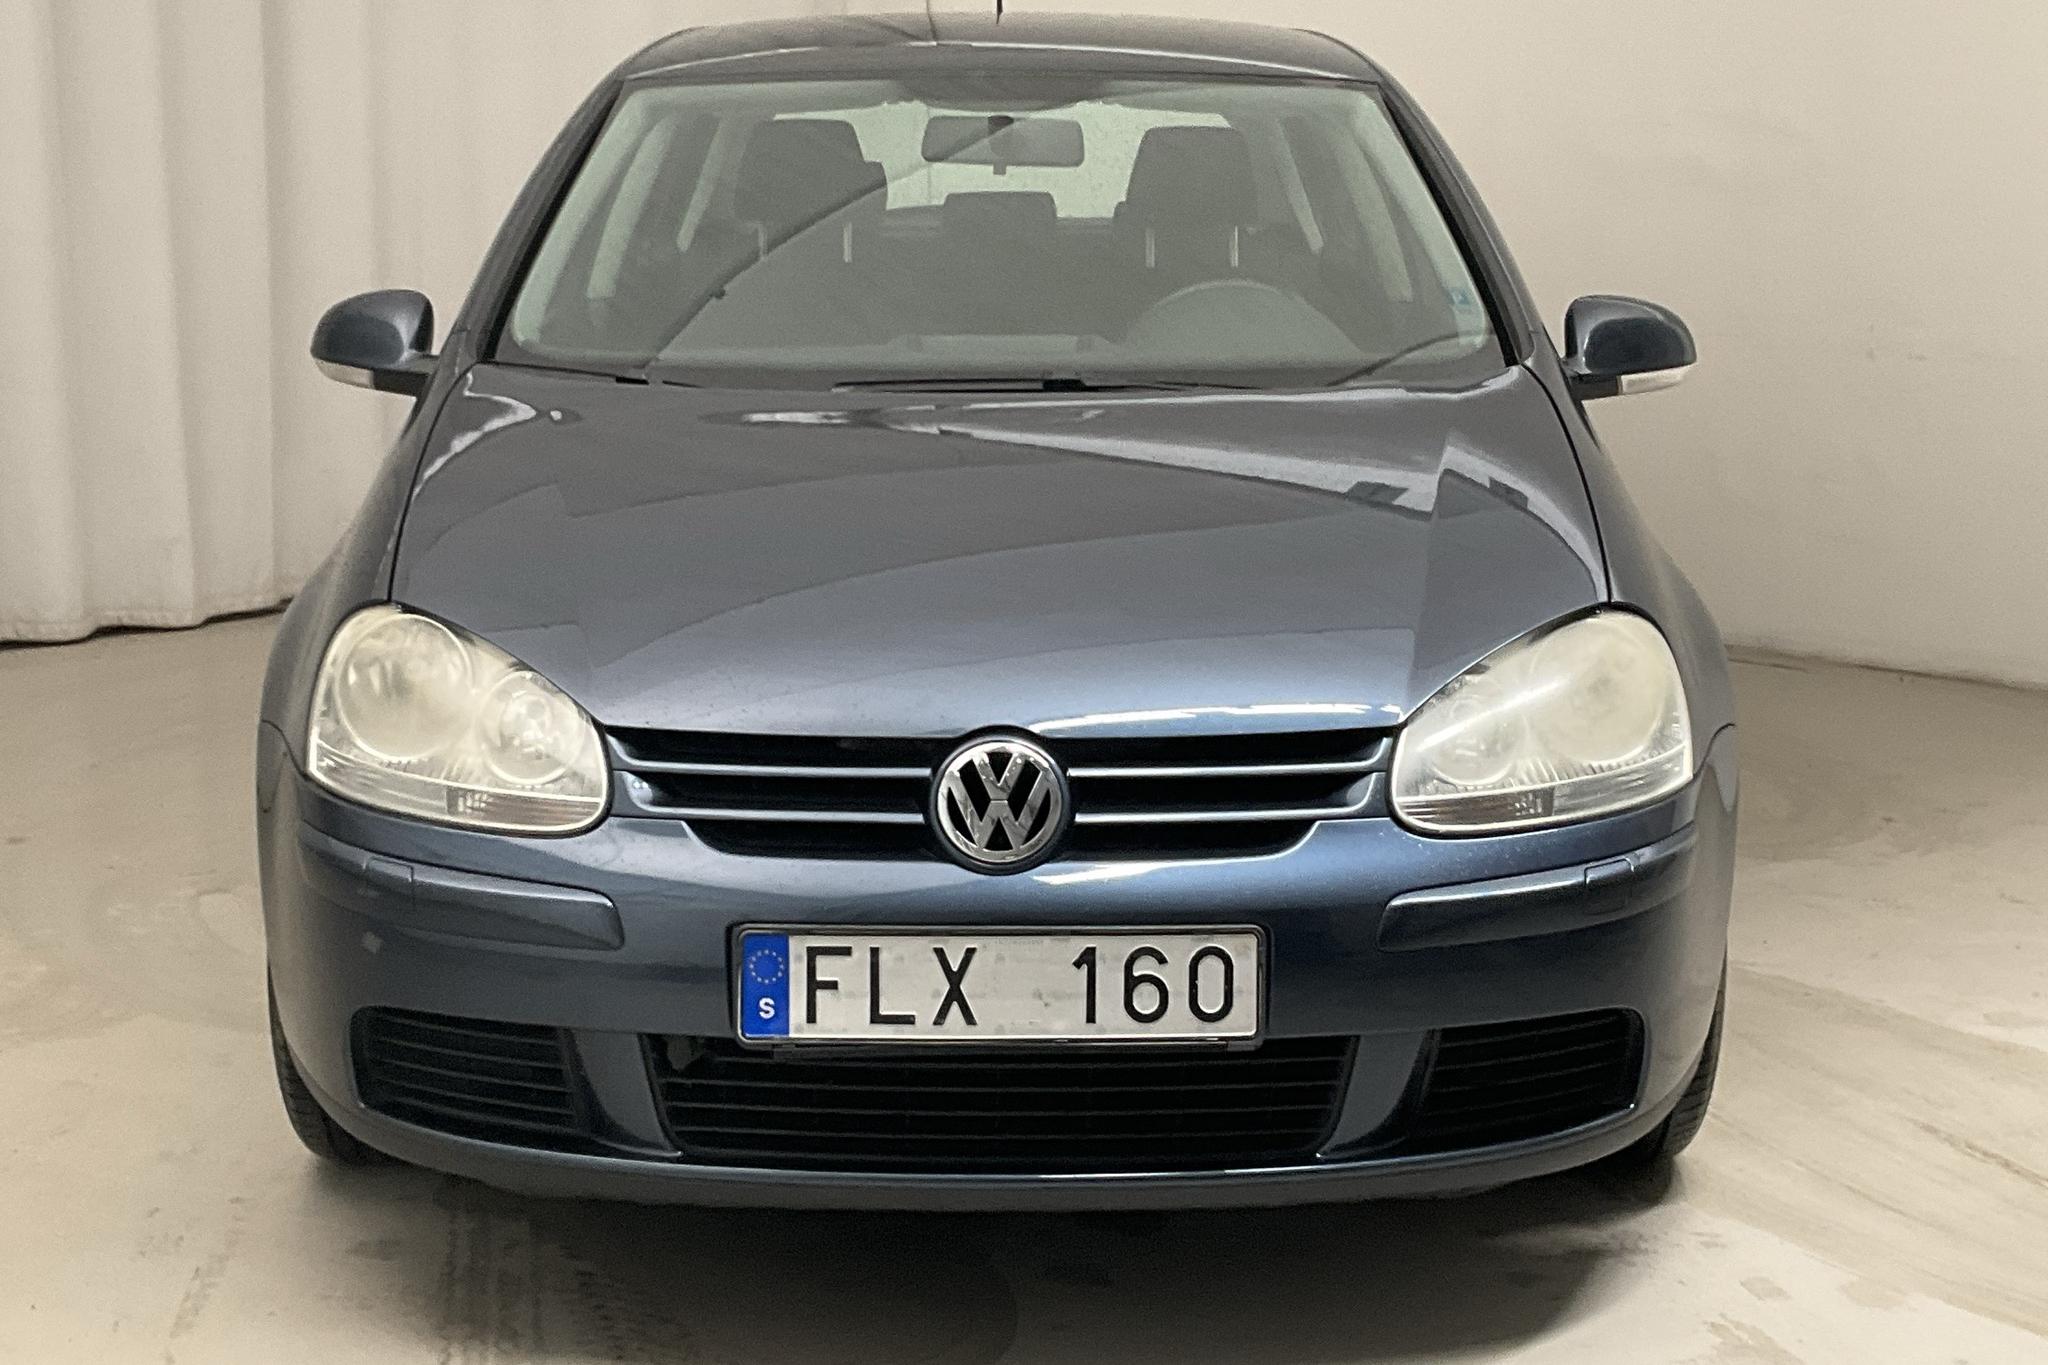 VW Golf A5 1.6 5dr (102hk) - 138 750 km - Käsitsi - Dark Blue - 2007